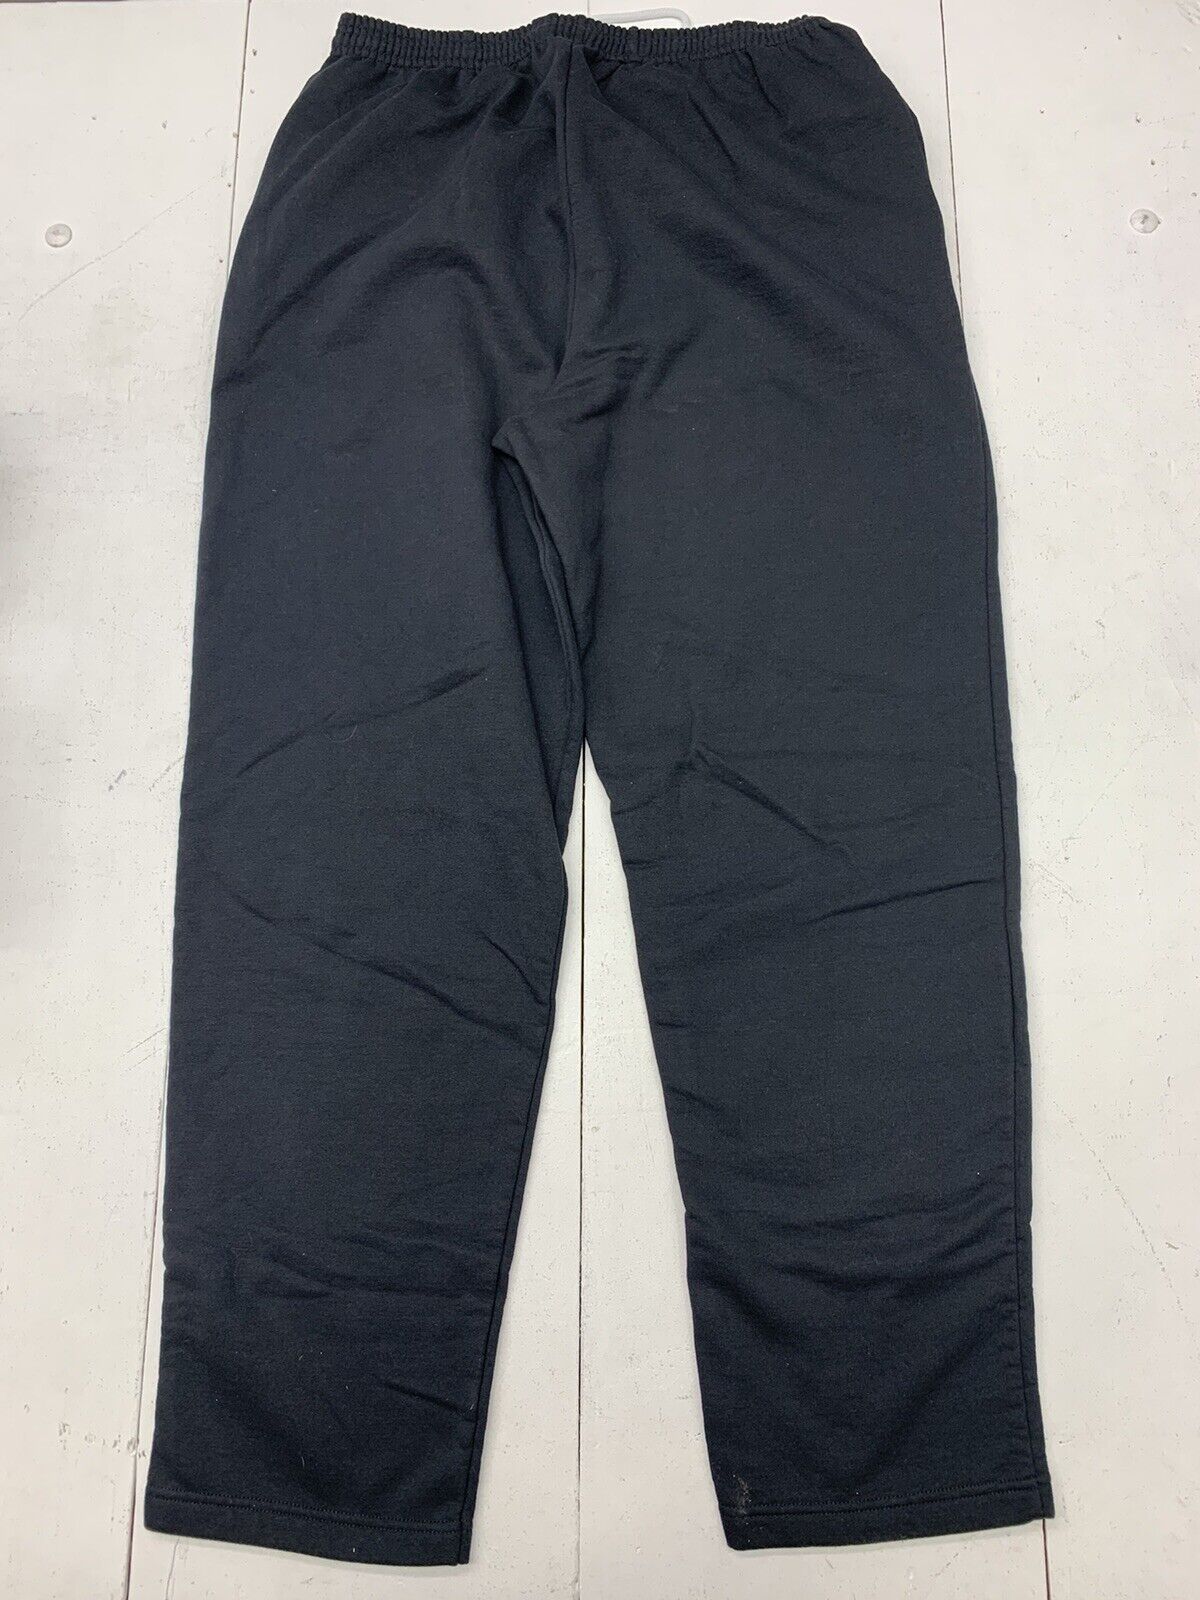 Port & Company Mens Black Sweat Pants Size 2XL - beyond exchange